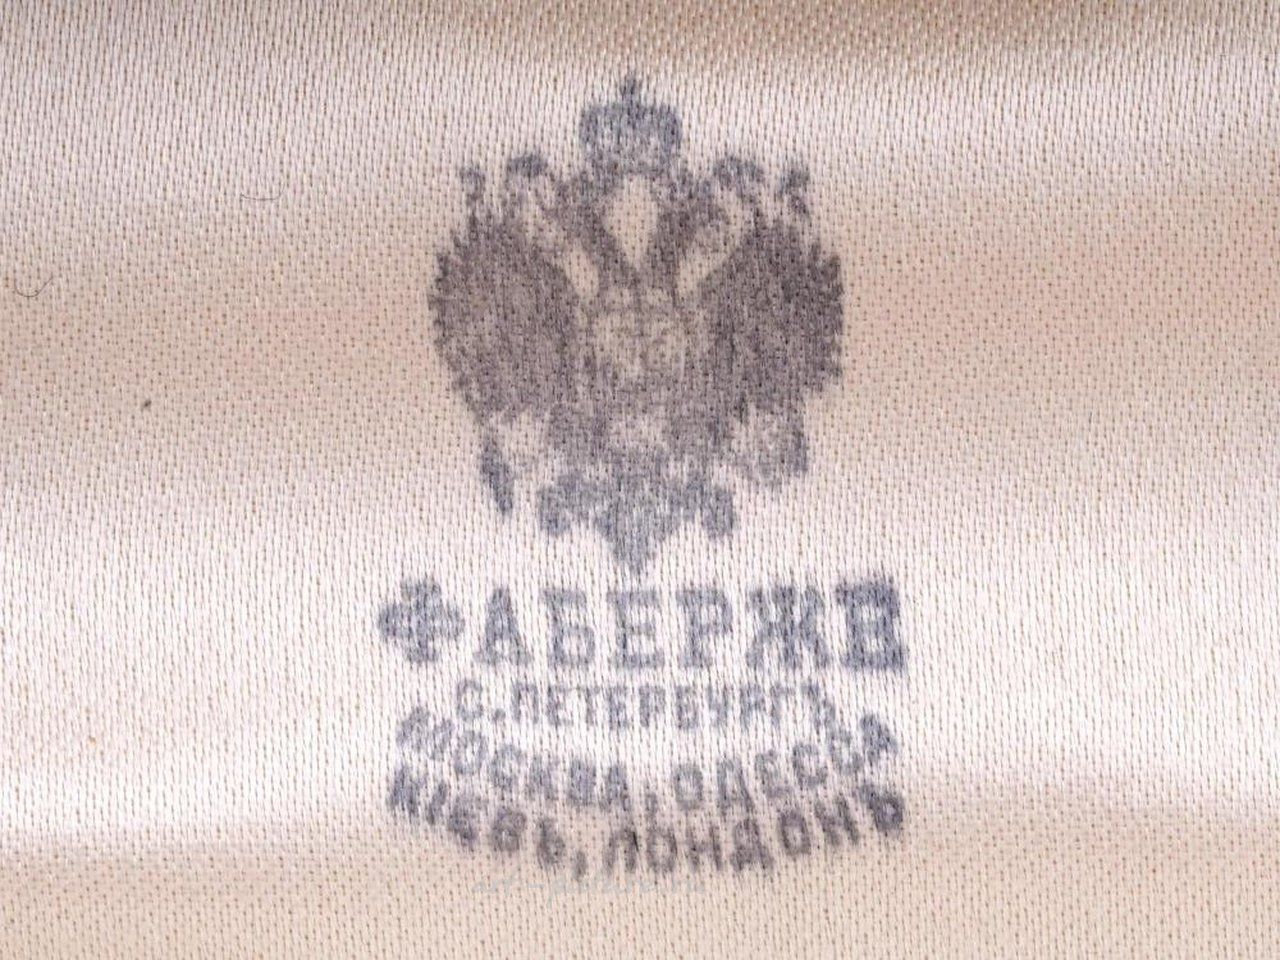 Русское серебро , Портсигар из русского позолоченного серебра.